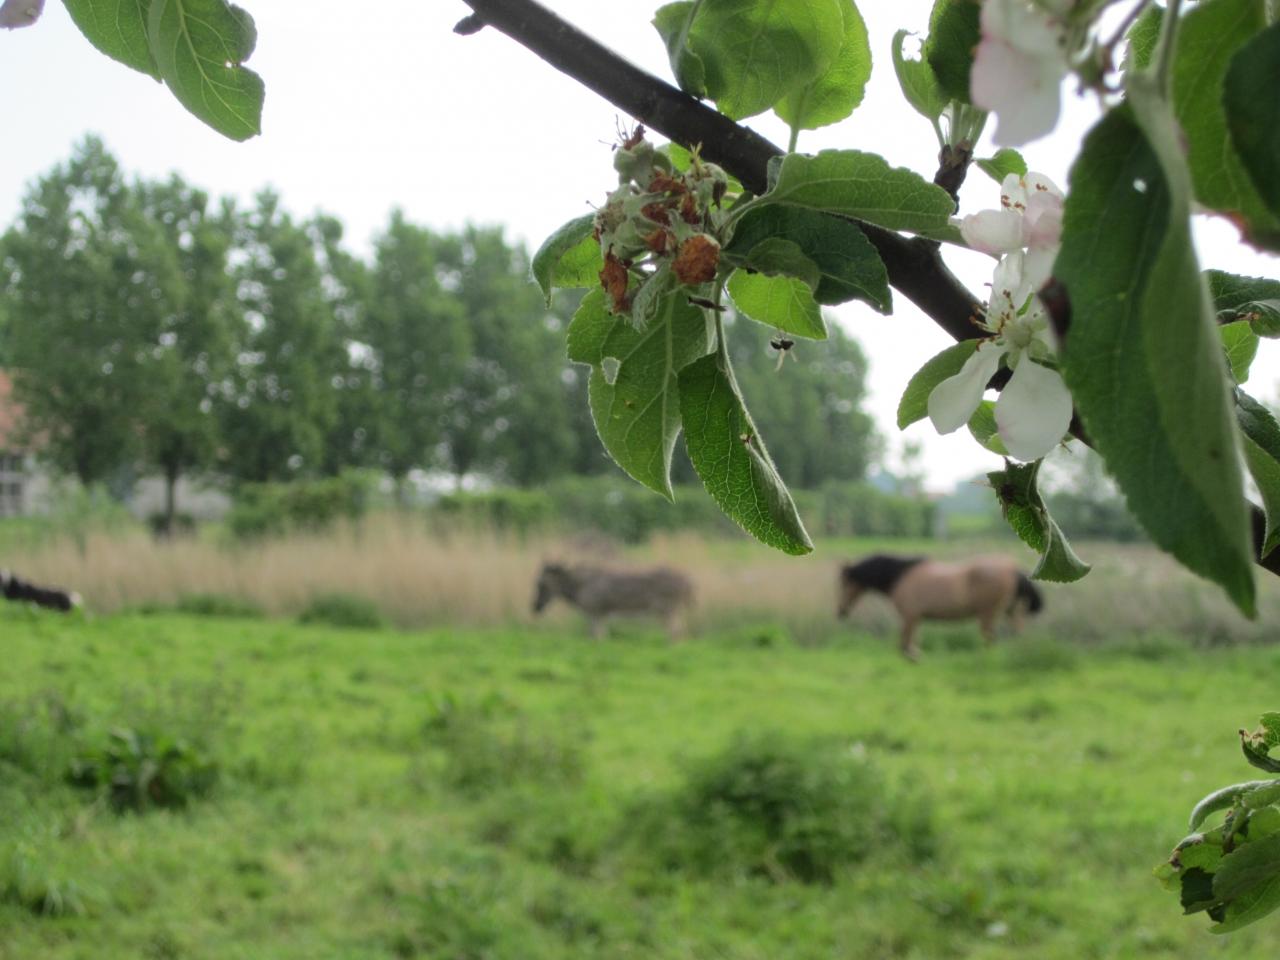 2014-05-01 exteriieur ferme cheaval ane poney